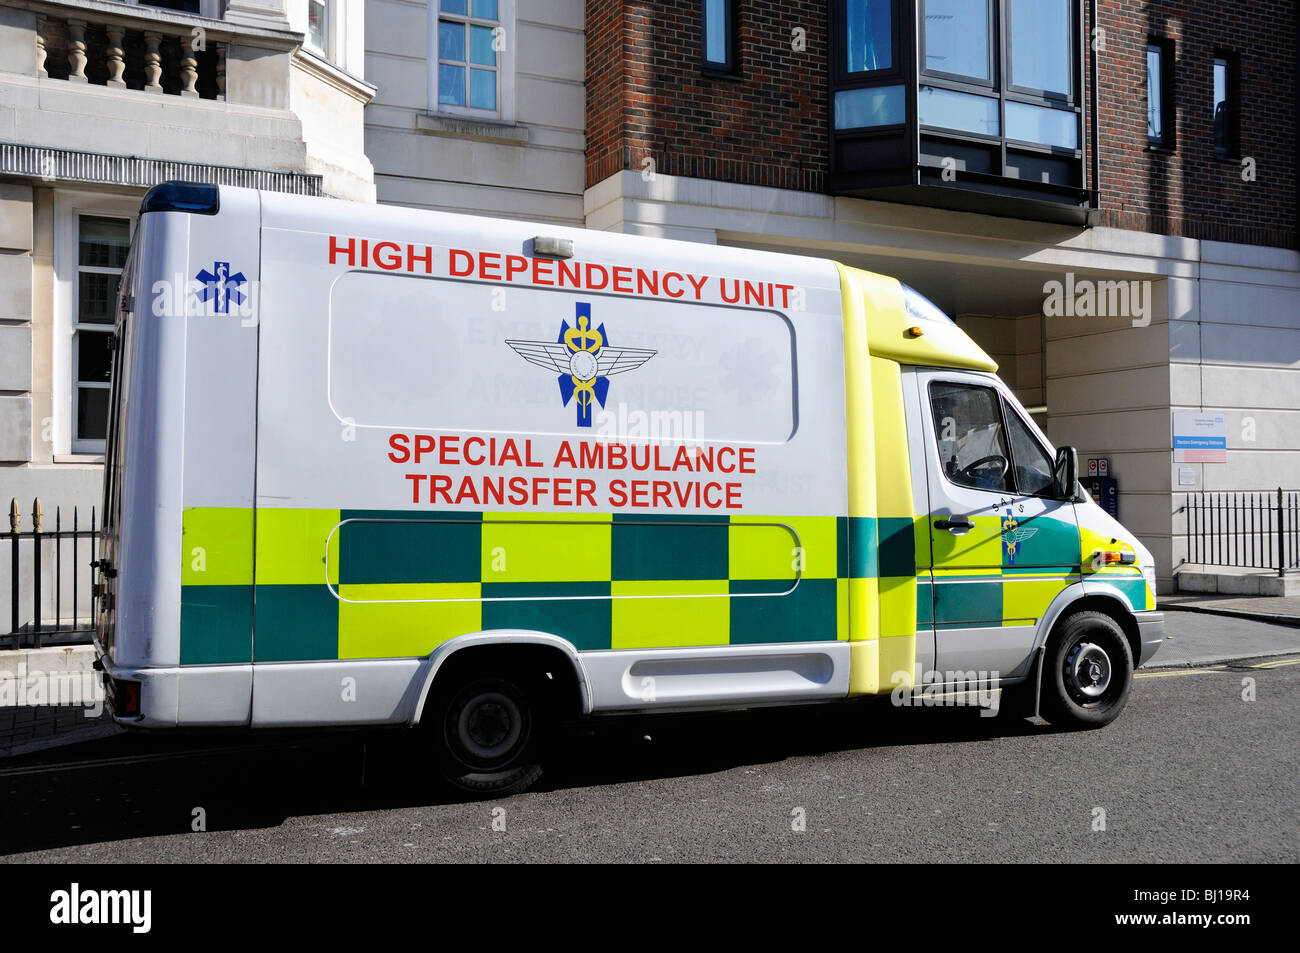 Alta dependencia del Servicio de transferencia ambulancia especial fuera del Heart Hospital Marylebone Londres Reino unido Foto de stock